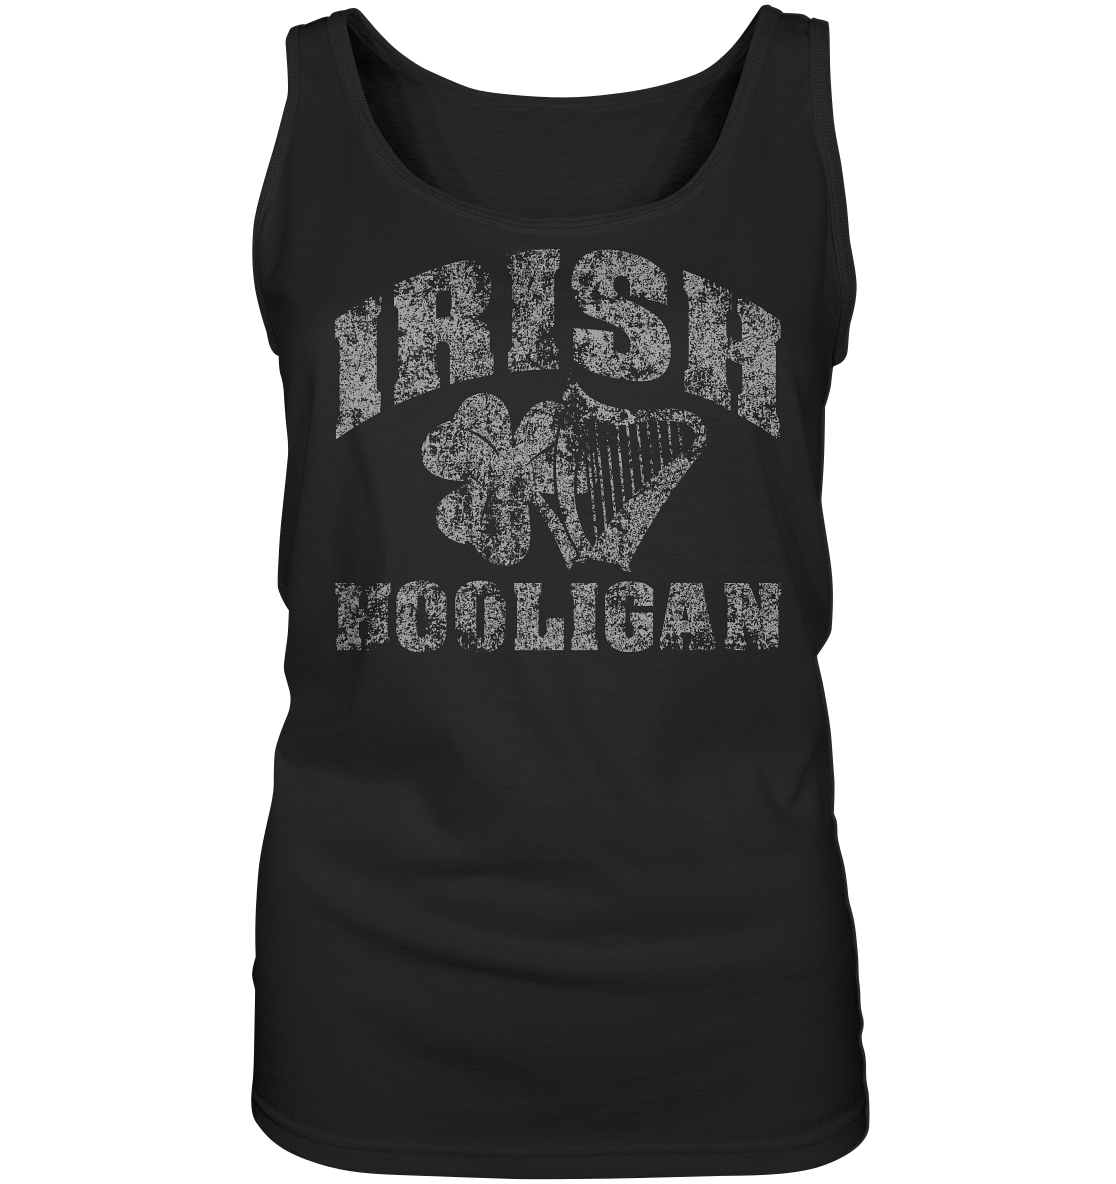 "Irish Hooligan" - Ladies Tank-Top